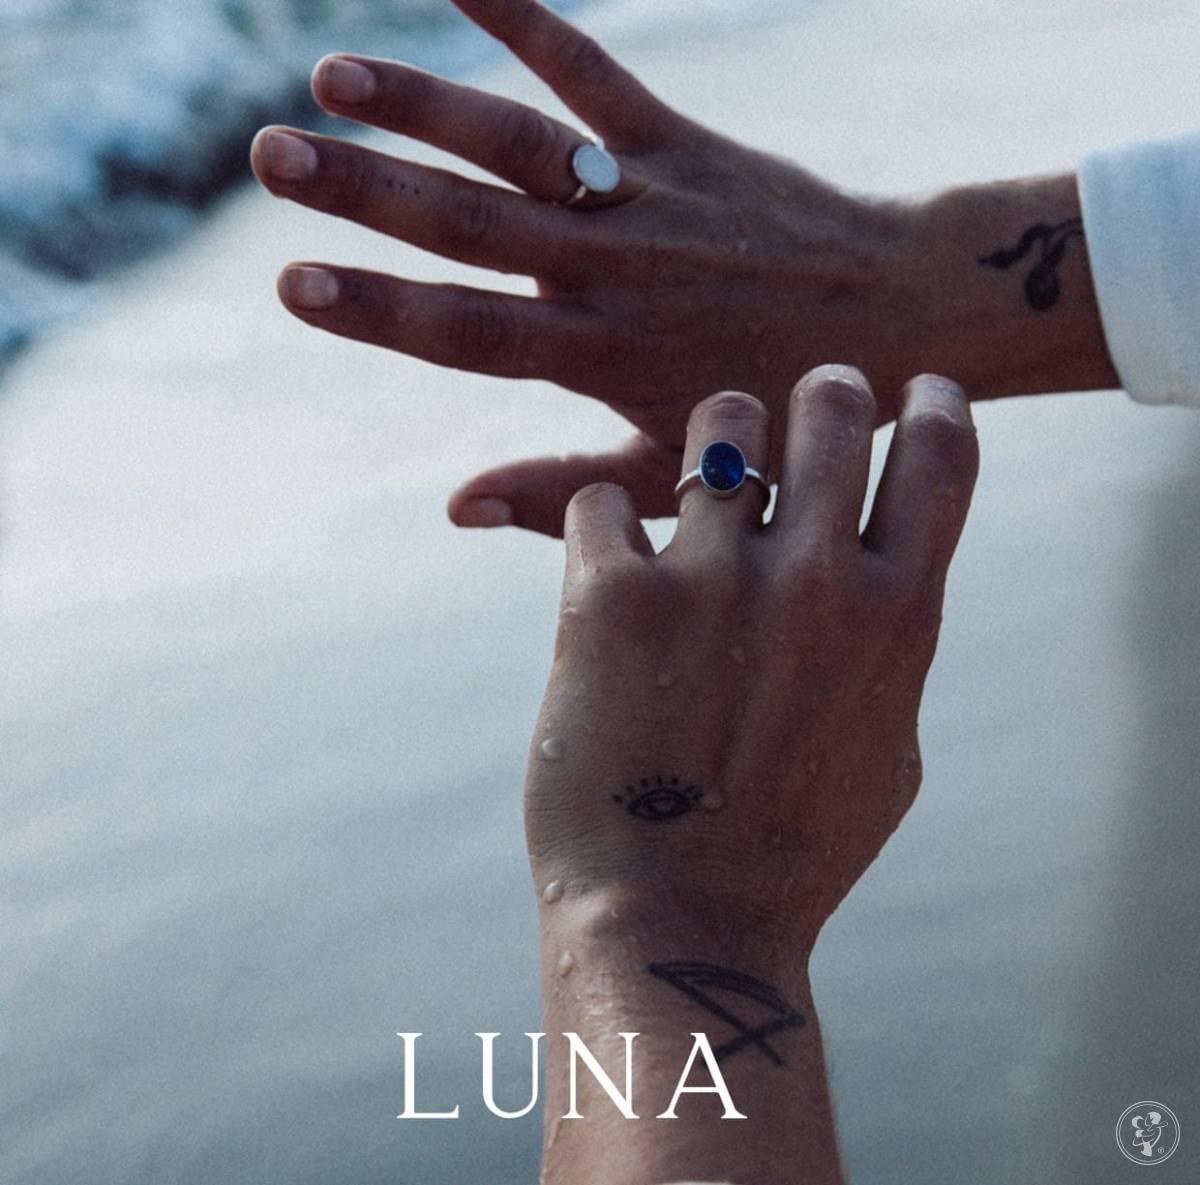 Luna Mood - unikatowa biżuteria , Płock - zdjęcie 1